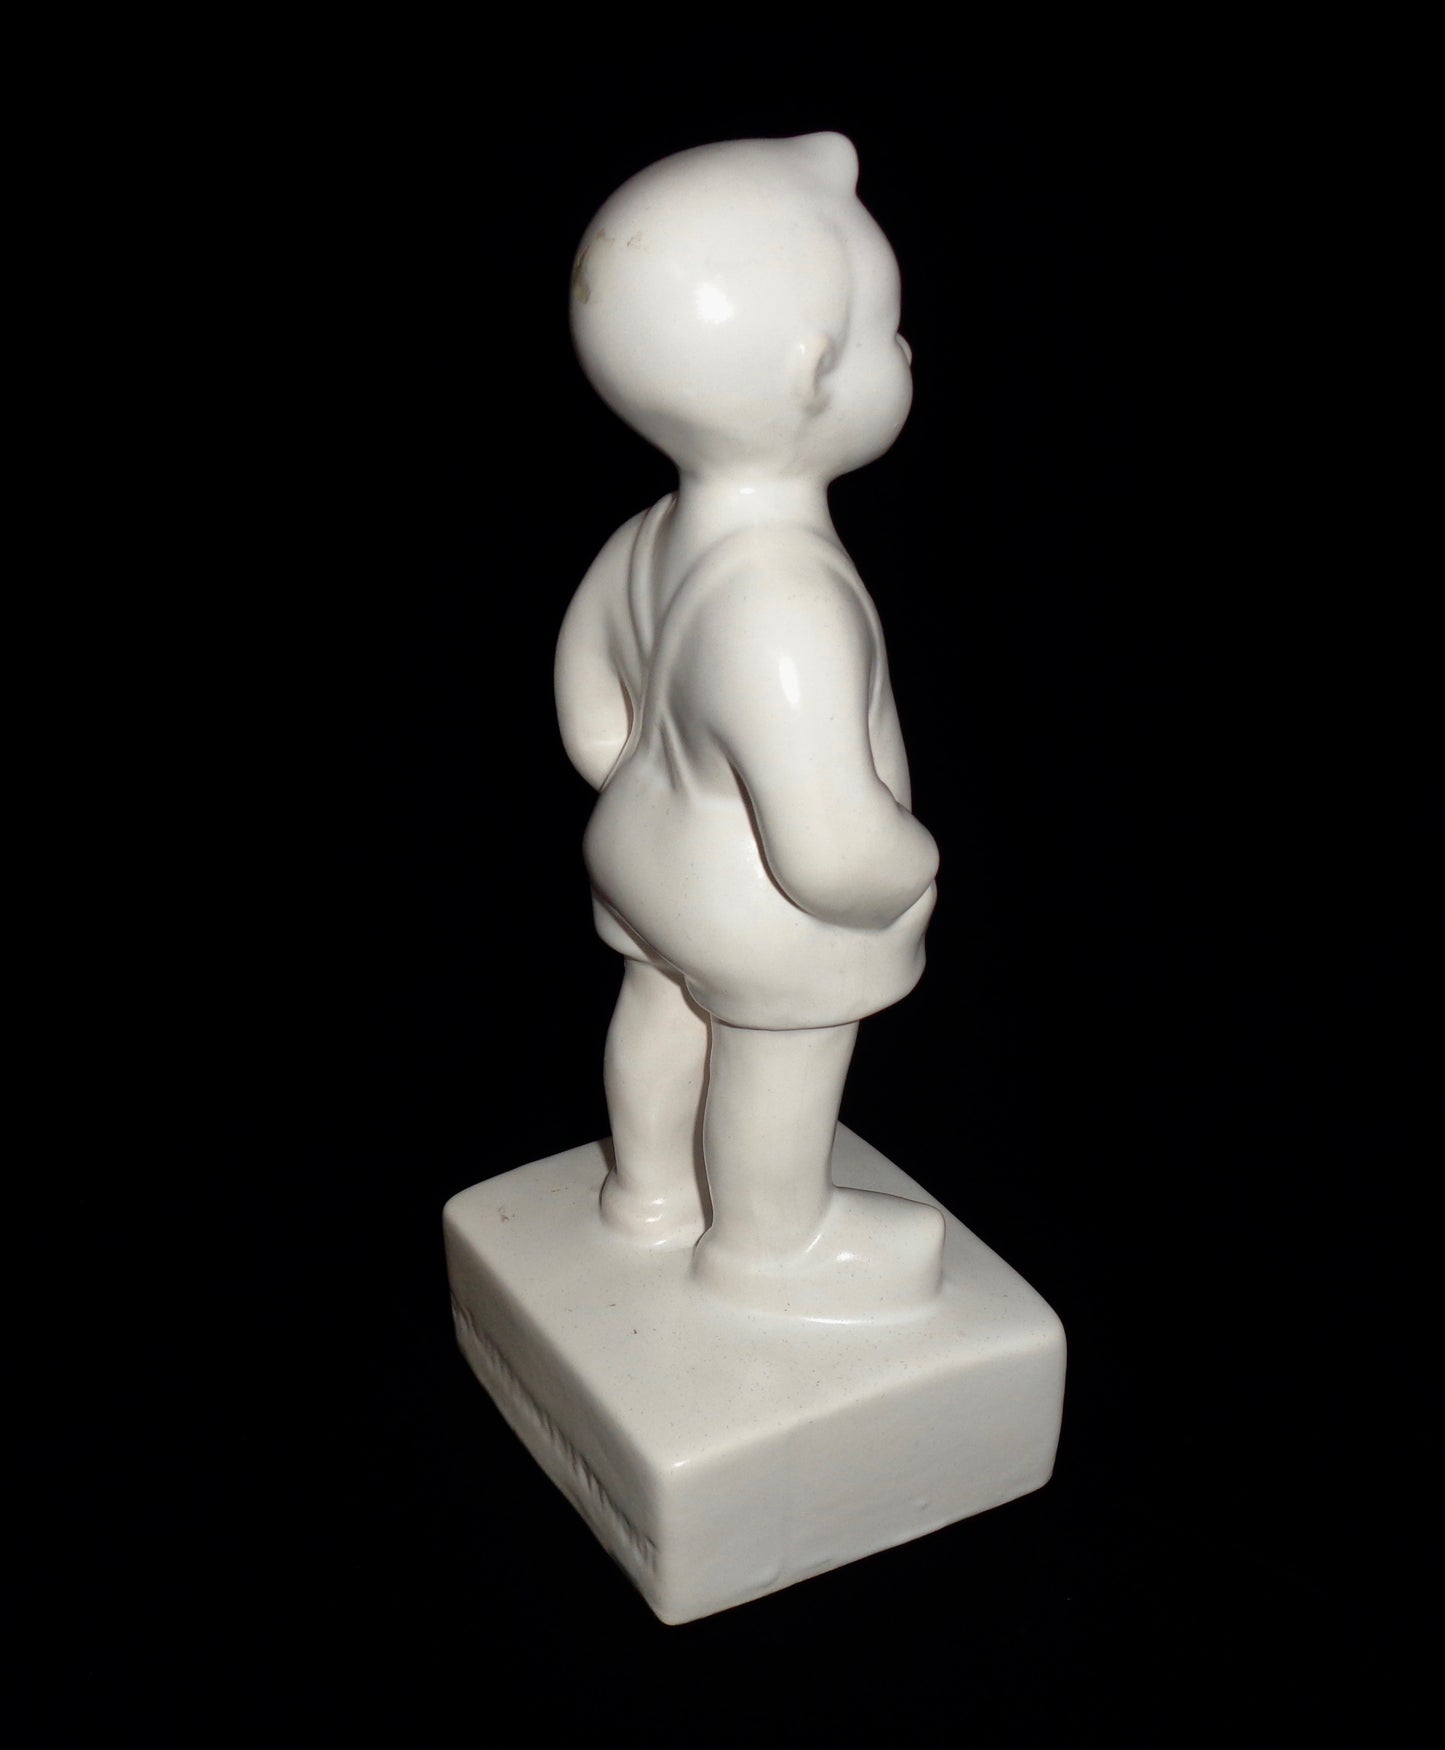 Vintage Bartje Bartels Small Pottery Figurine By Suze Boschma-Berkhout